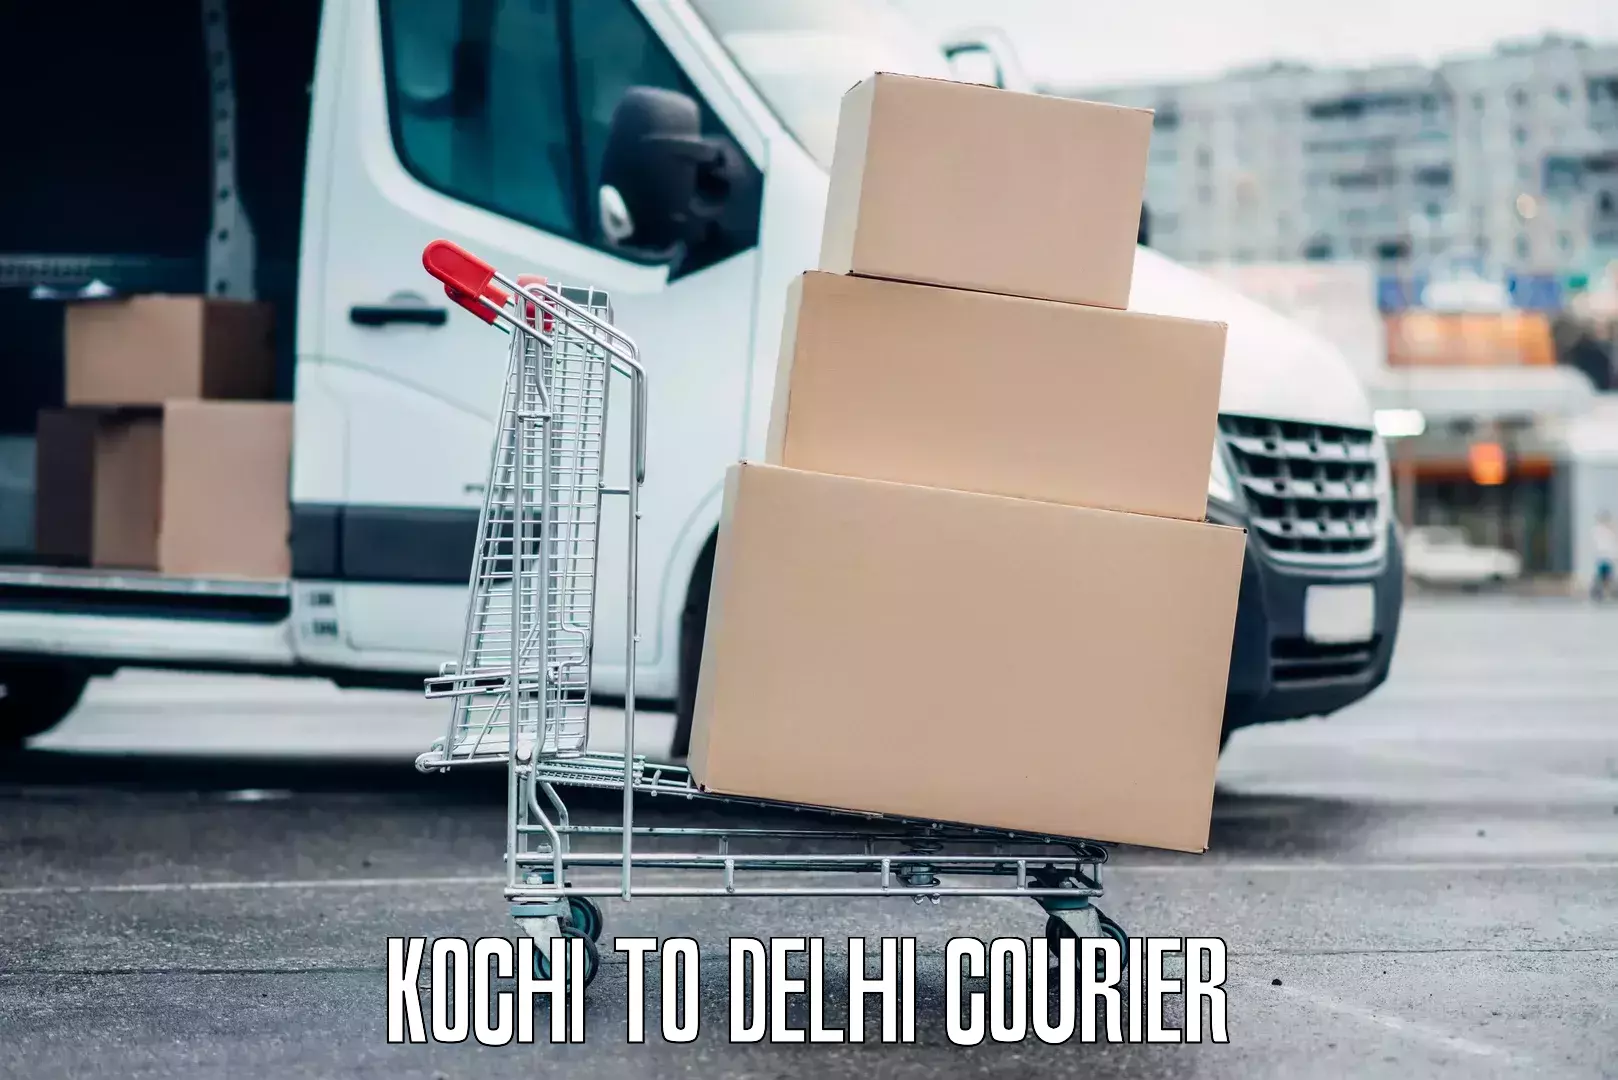 Luggage delivery estimate Kochi to Delhi